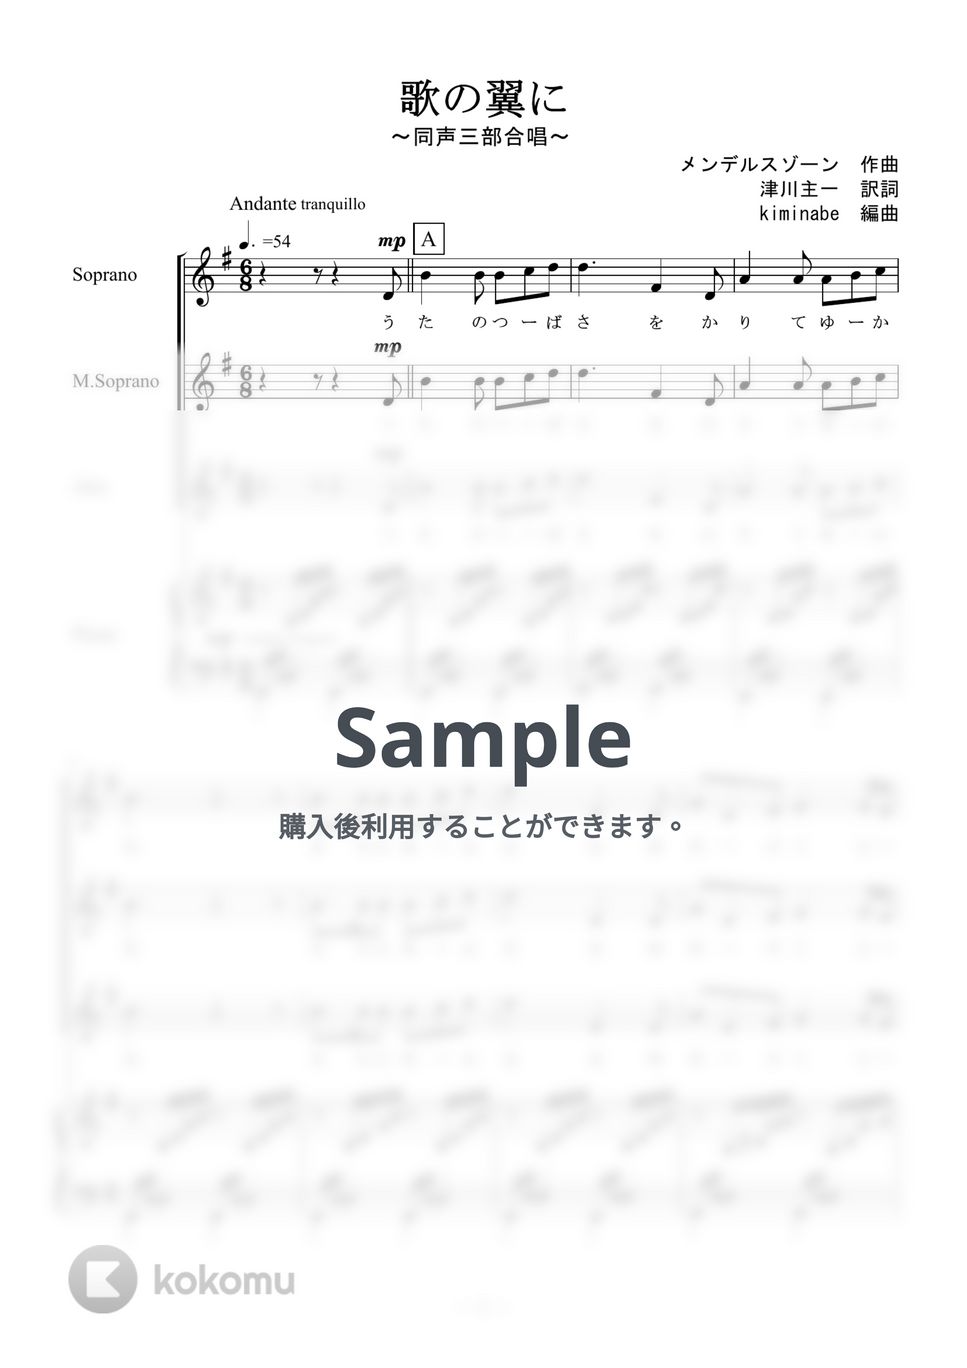 メンデルスゾーン - 歌の翼に (同声三部合唱) by kiminabe